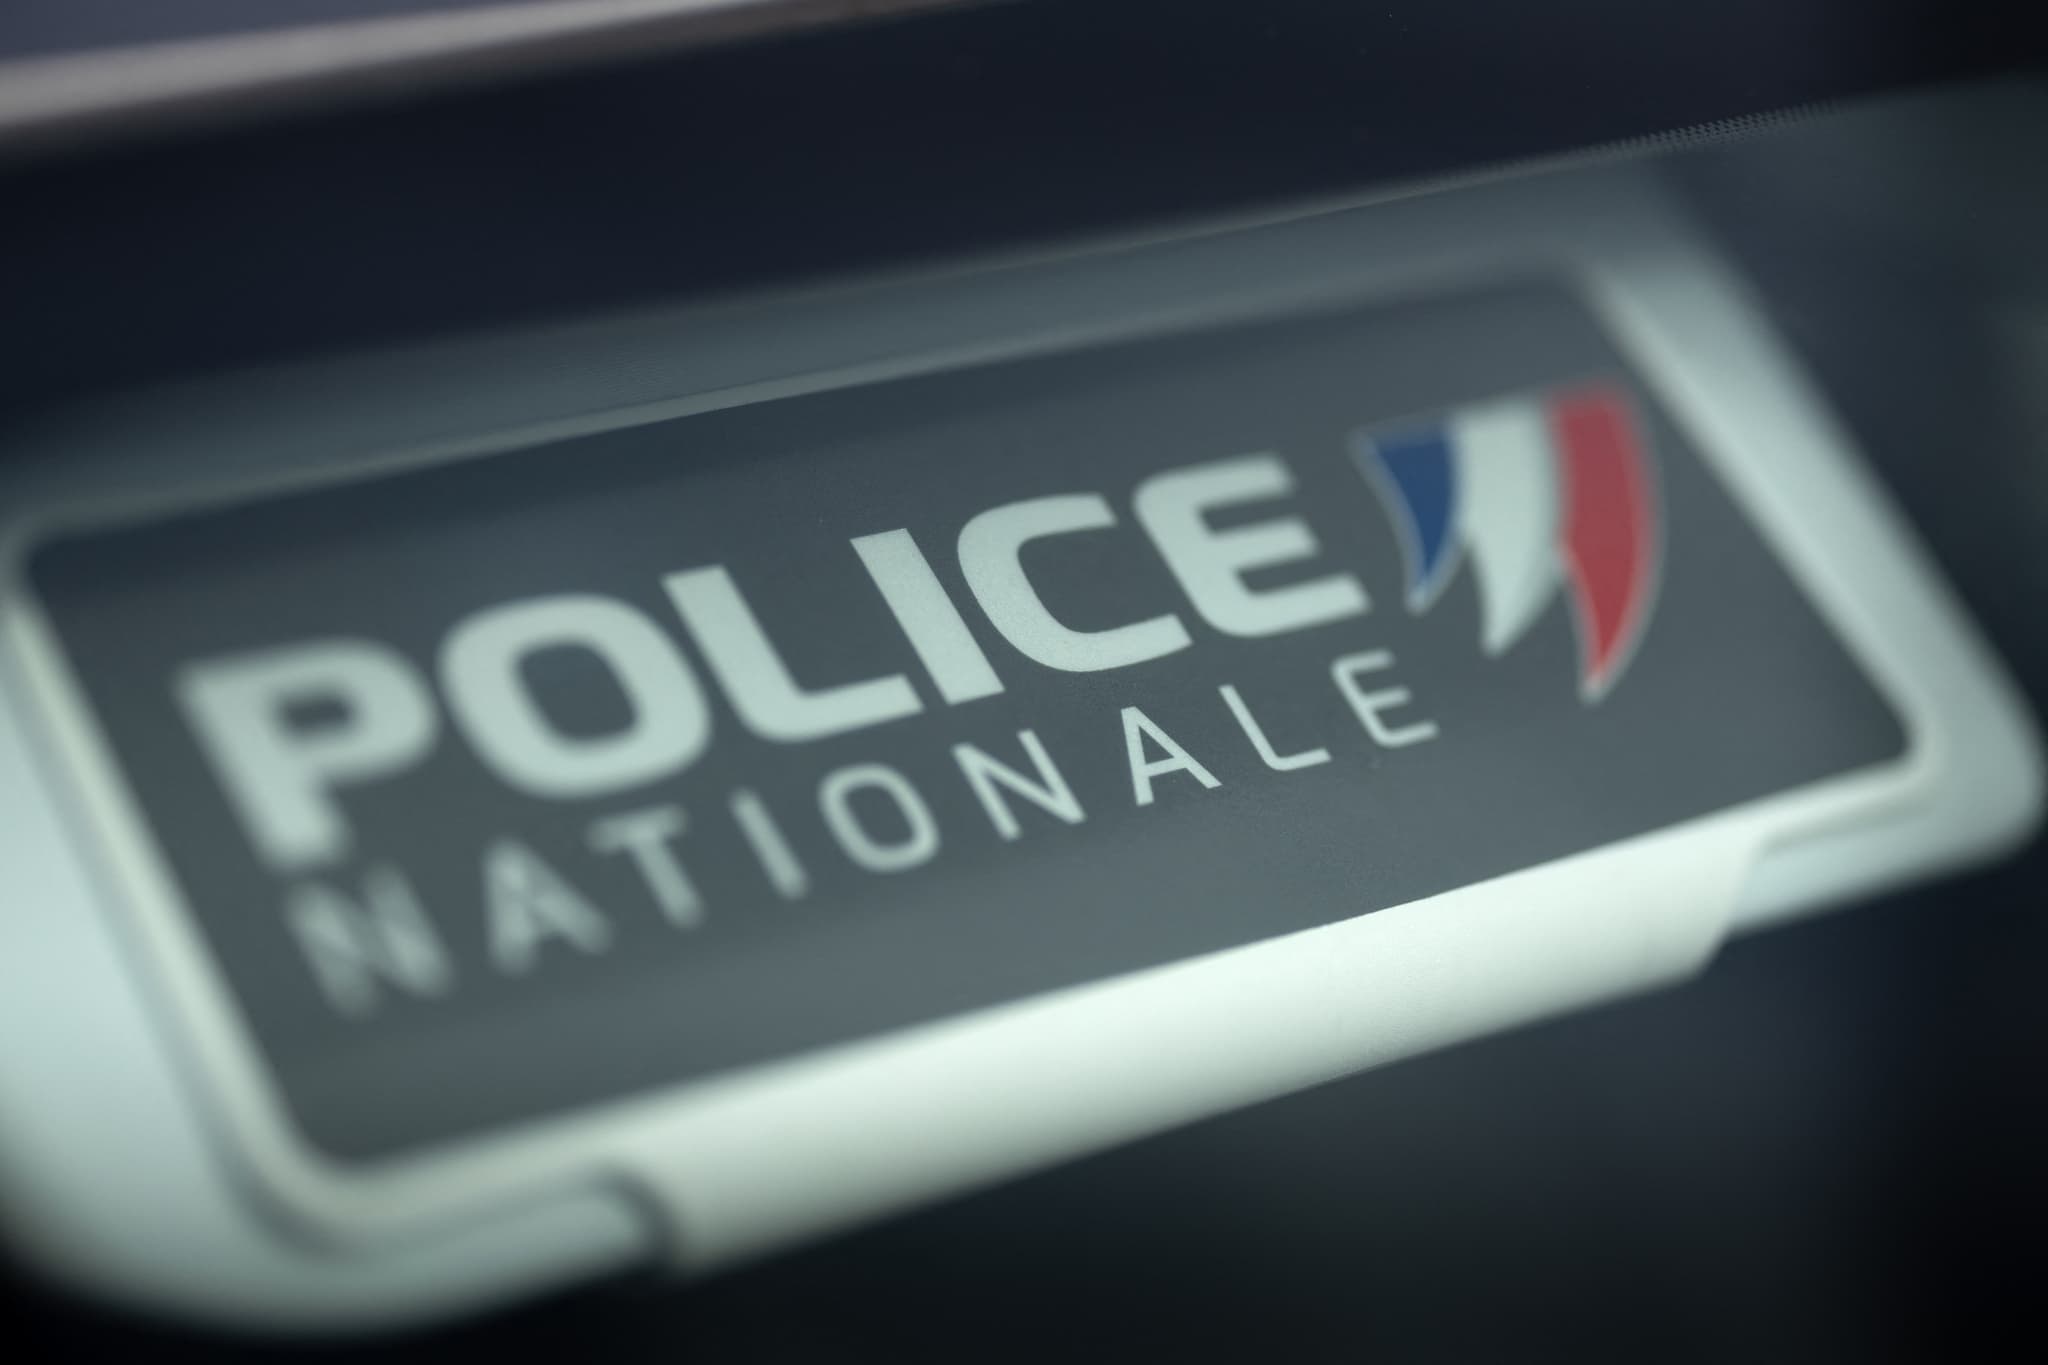 paris: un homme gravement blessé par balle à proximité du stade charléty, une enquête ouverte